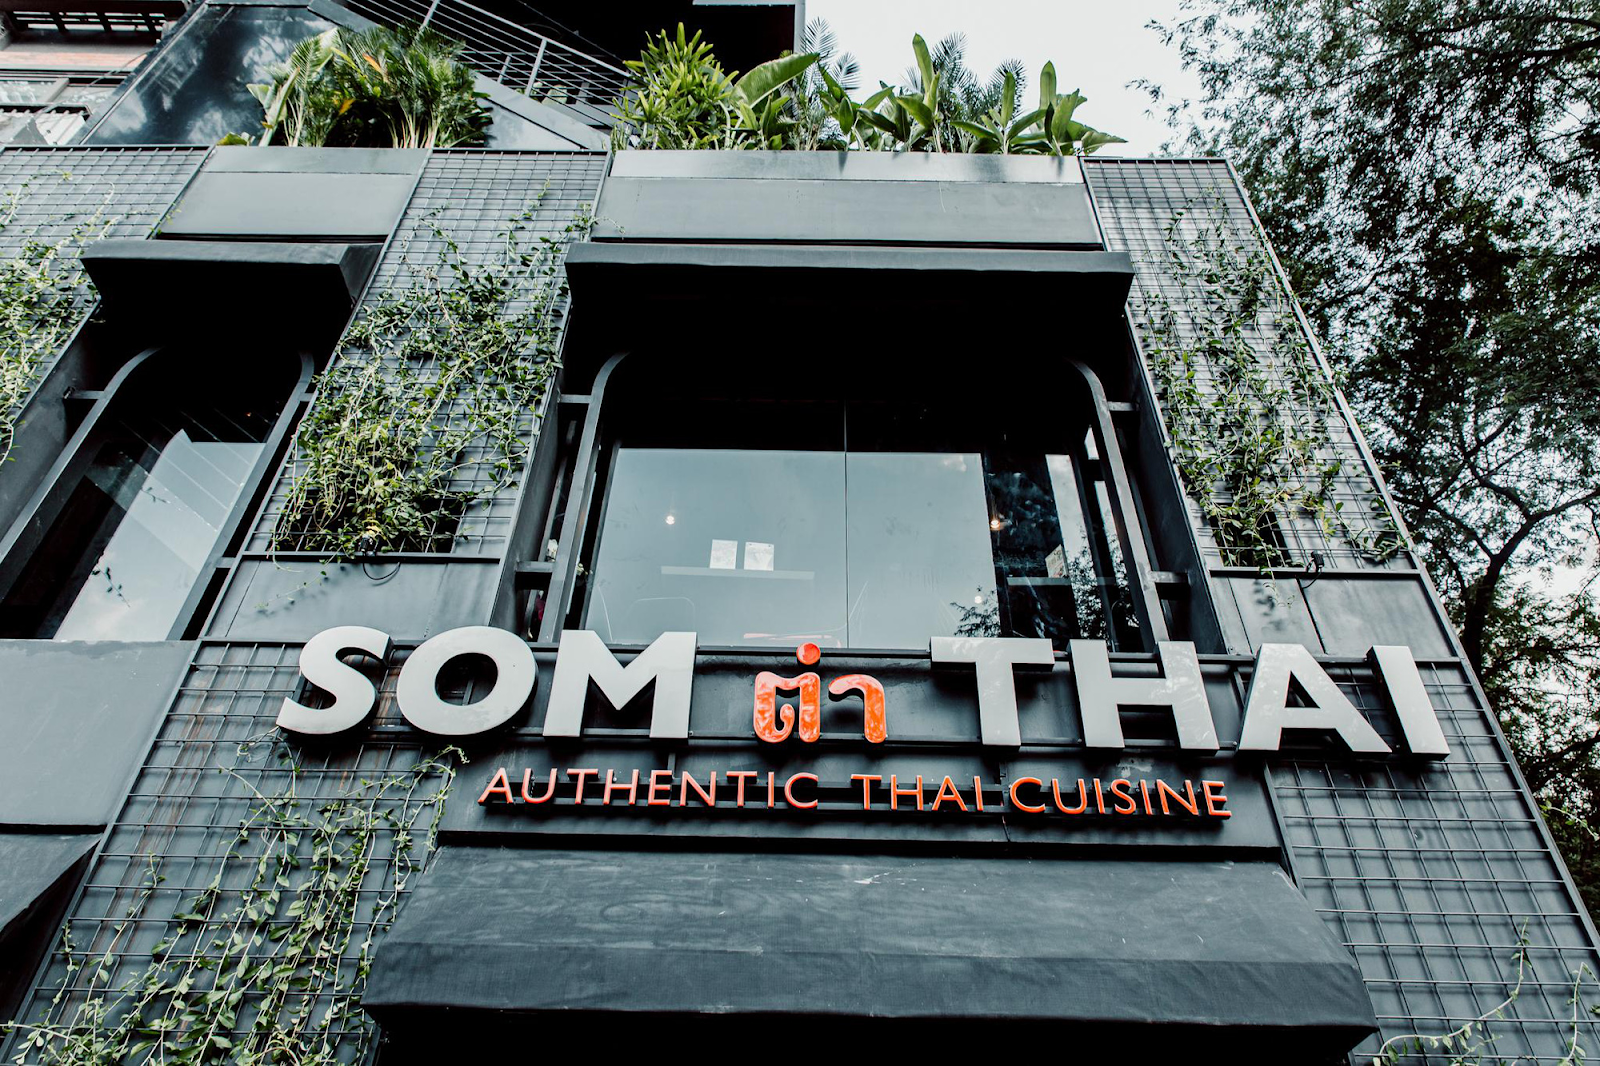 Nhà hàng món thái ngon ở Sài Gòn